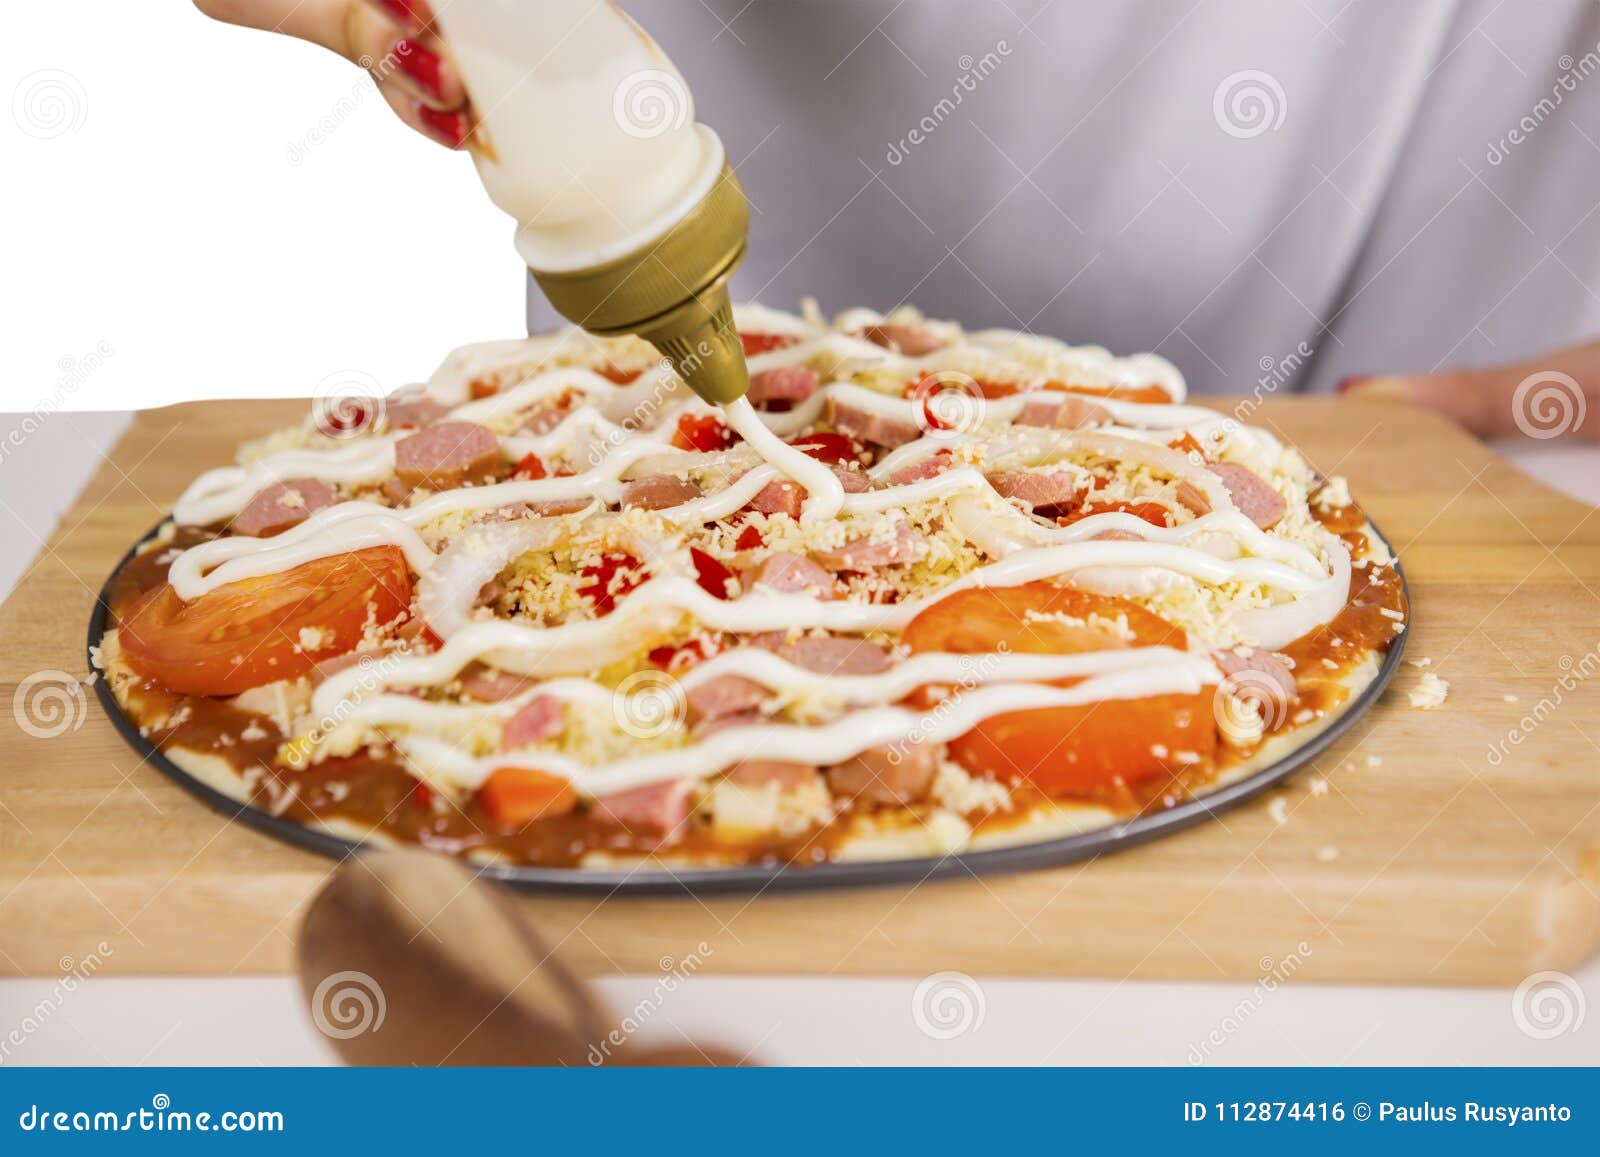 пицца рецепт заливка фото 107